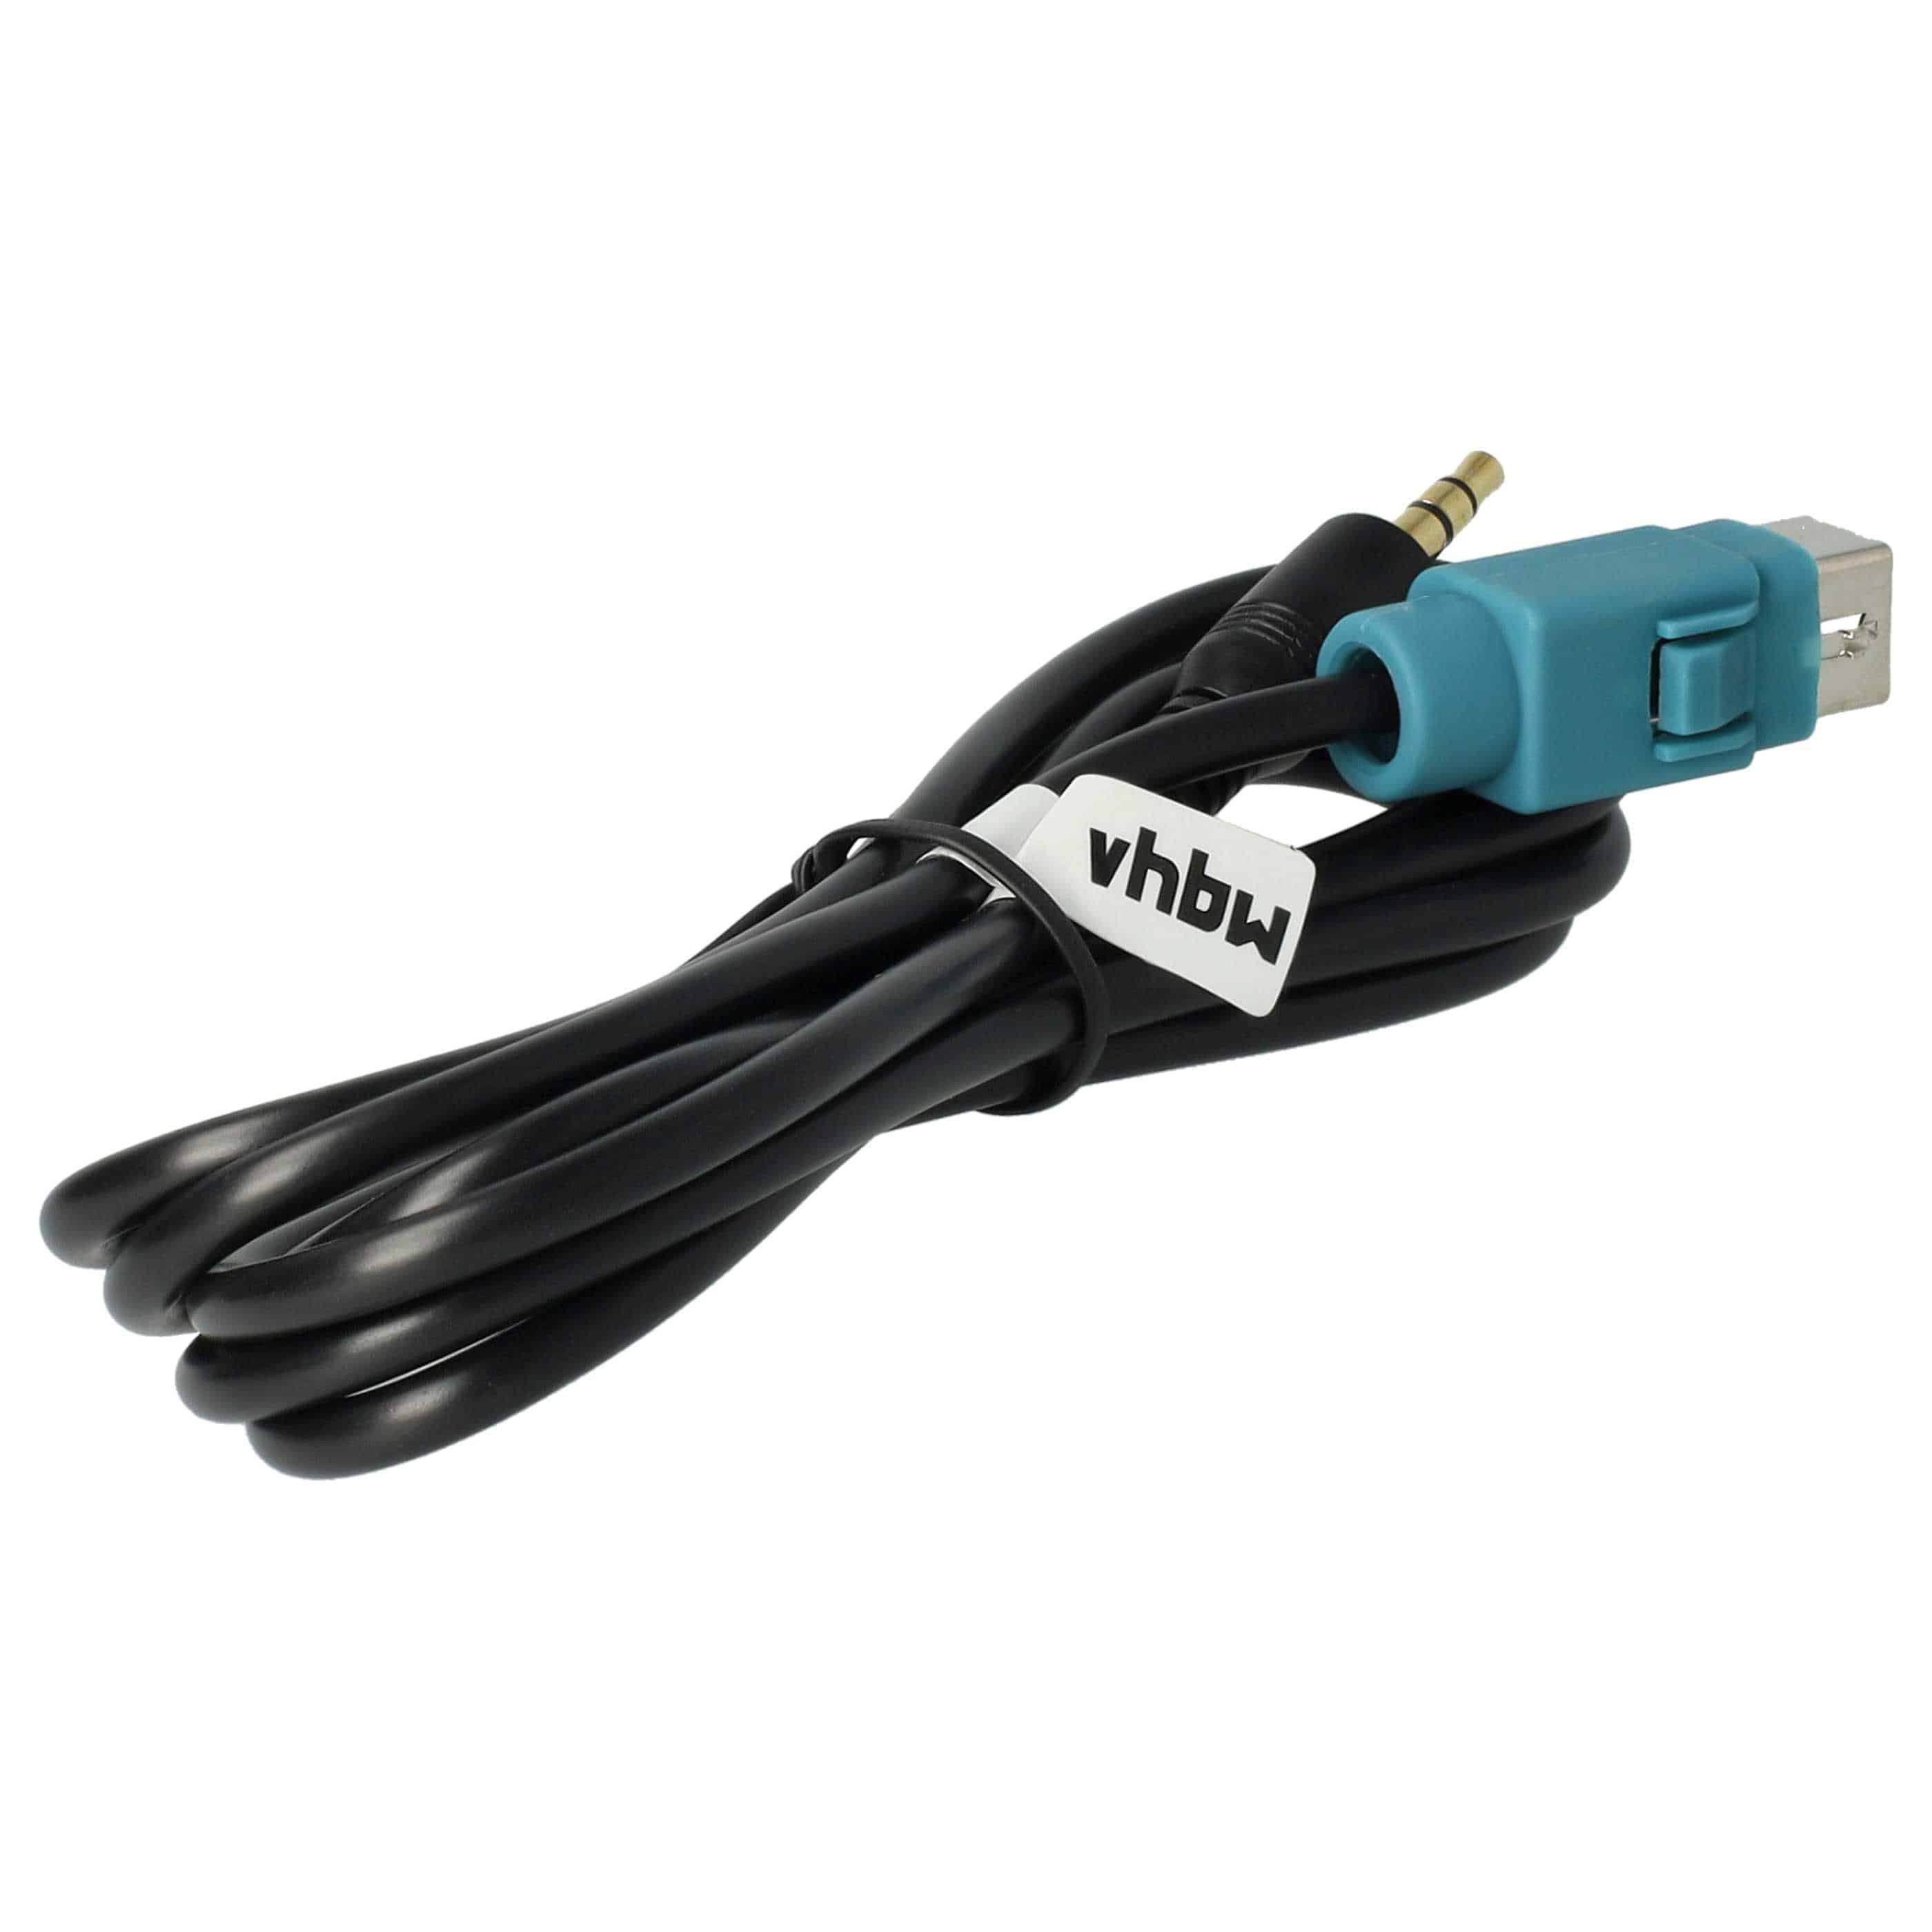 AUX Audio Adapter Kabel als Ersatz für Alpine KCE-237B Auto Radio u.a. - 100 cm, USB